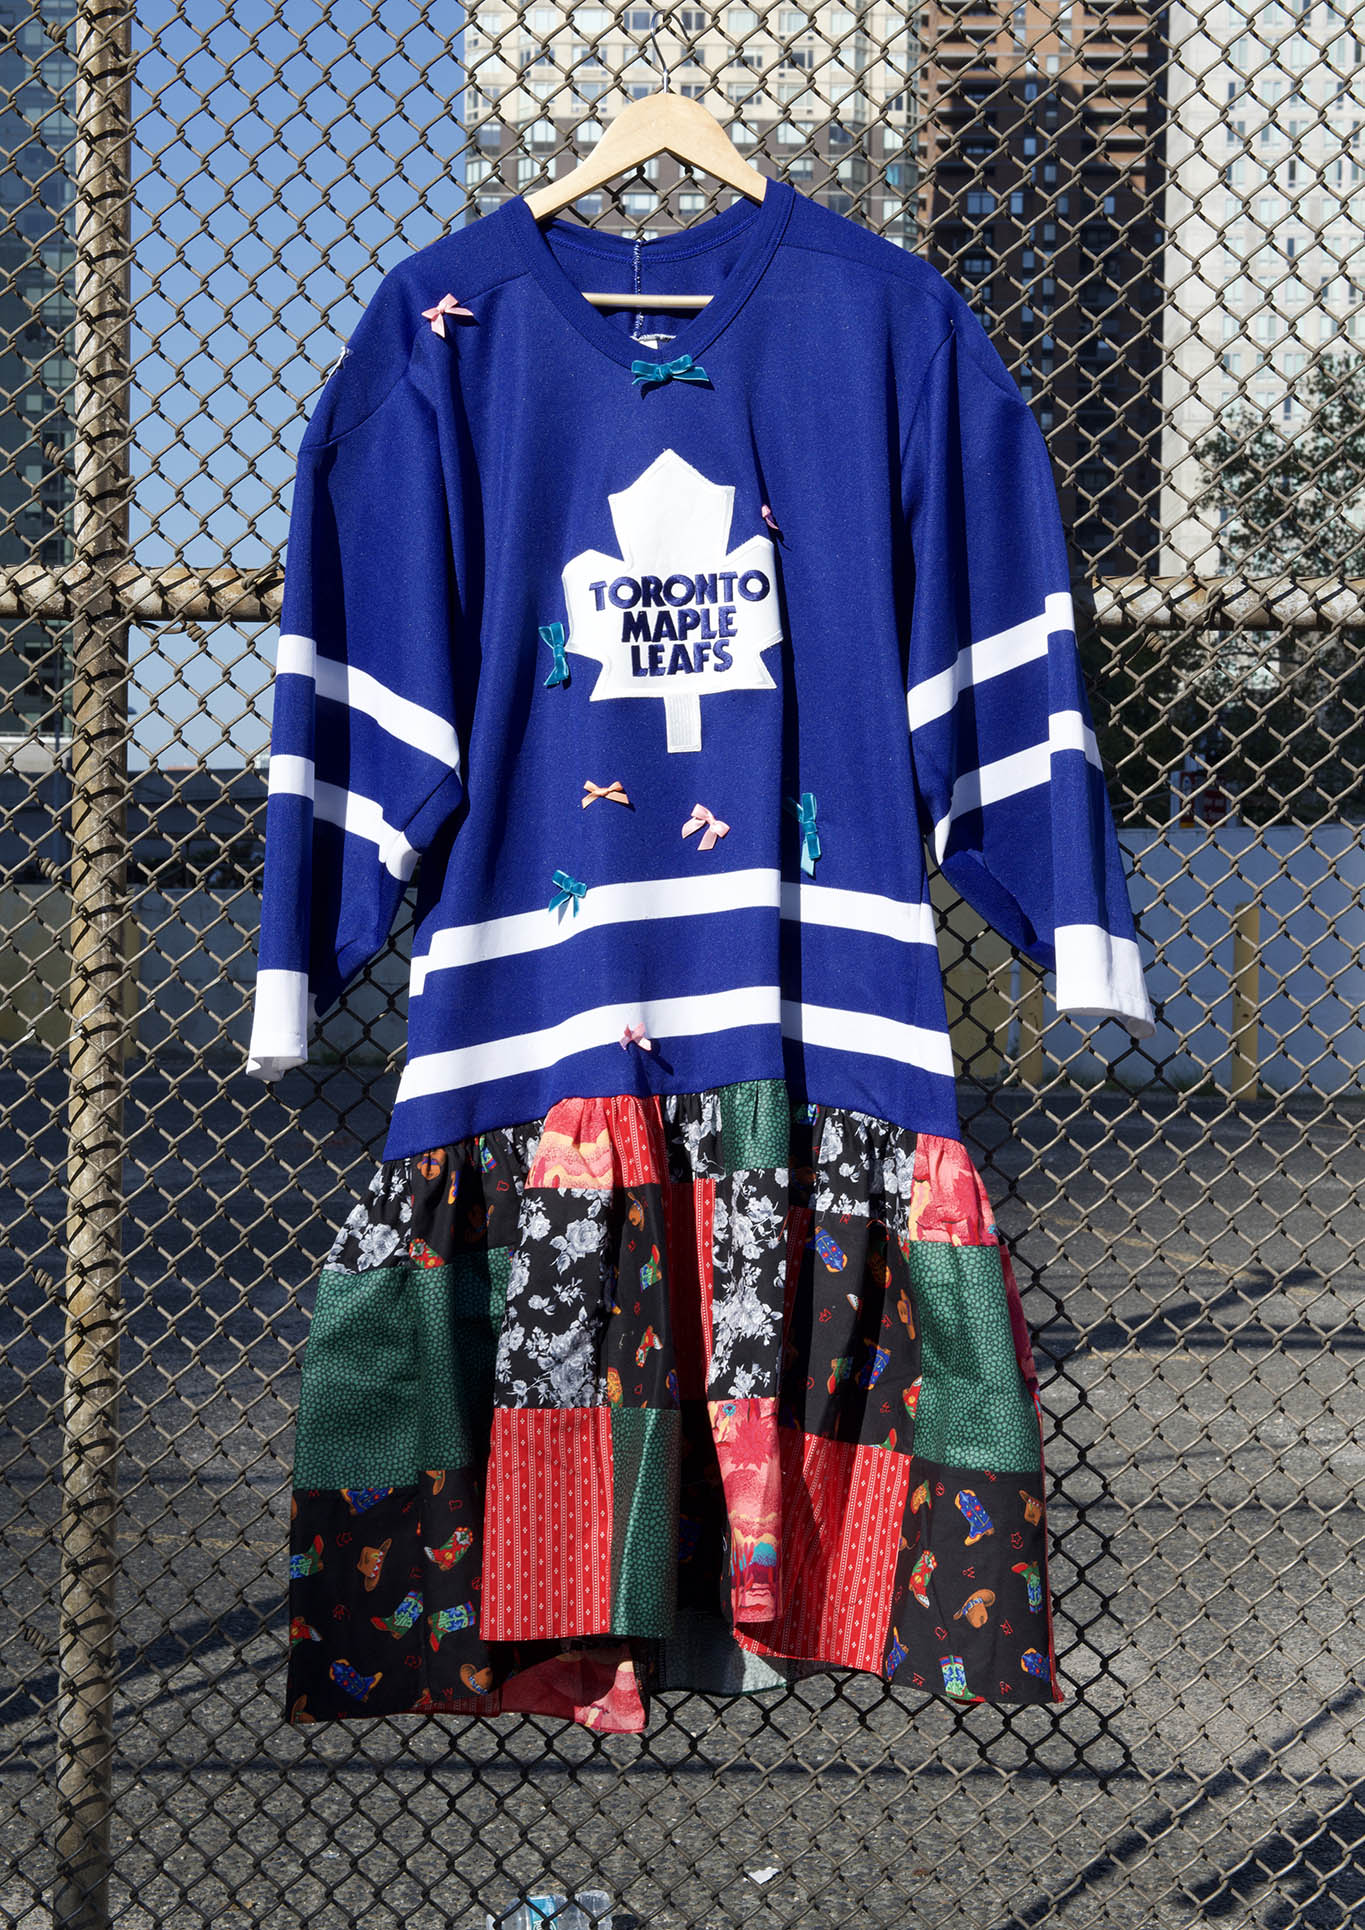 Batsheva One-of-a-Kind Vintage Toronto Maple Leafs Jersey Dress Long Dress